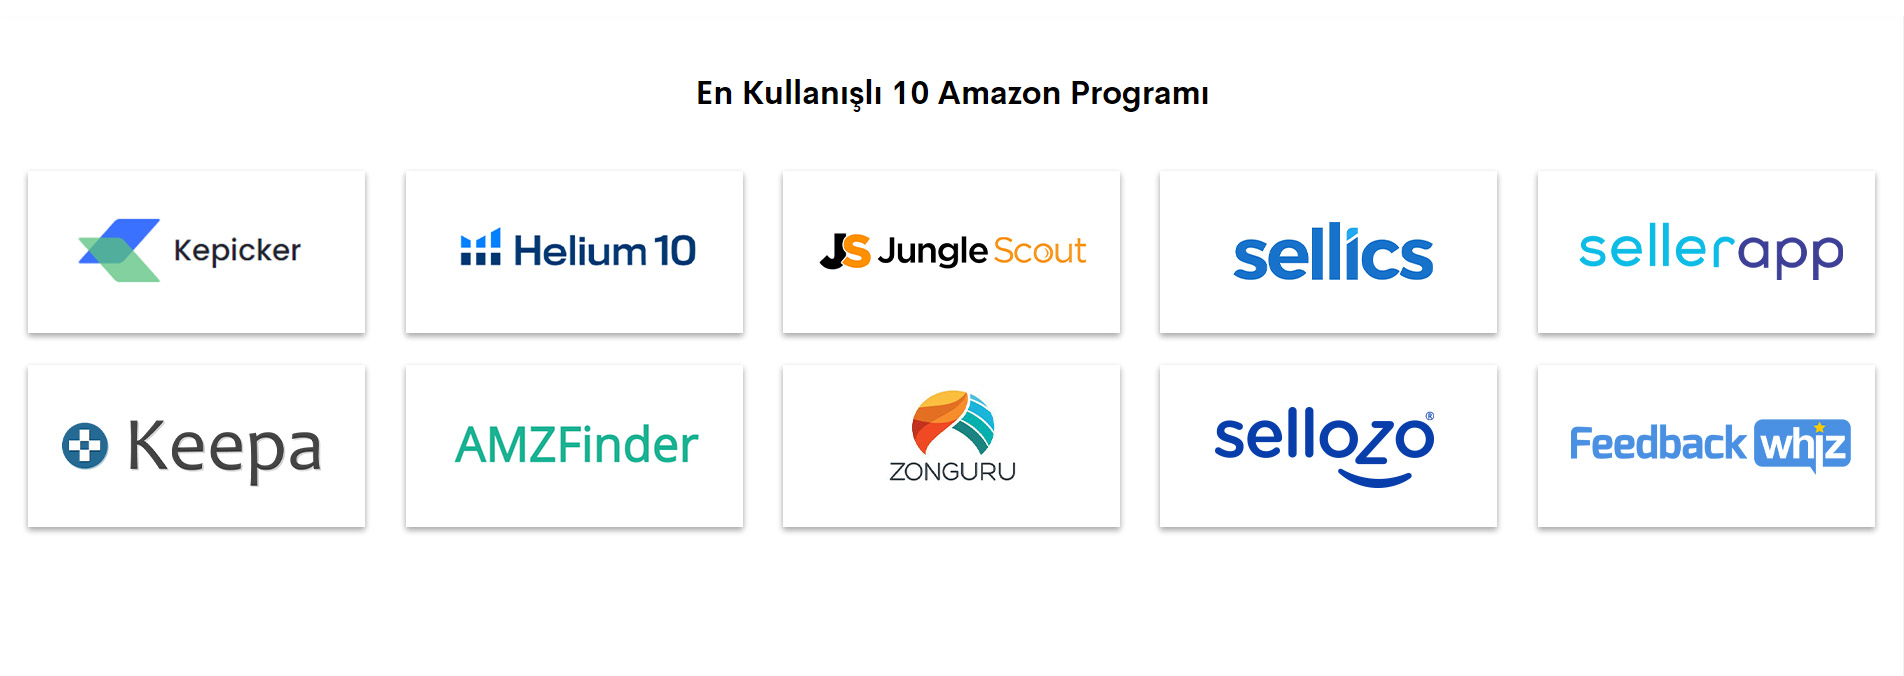 En Kullanışlı 10 Amazon Programı